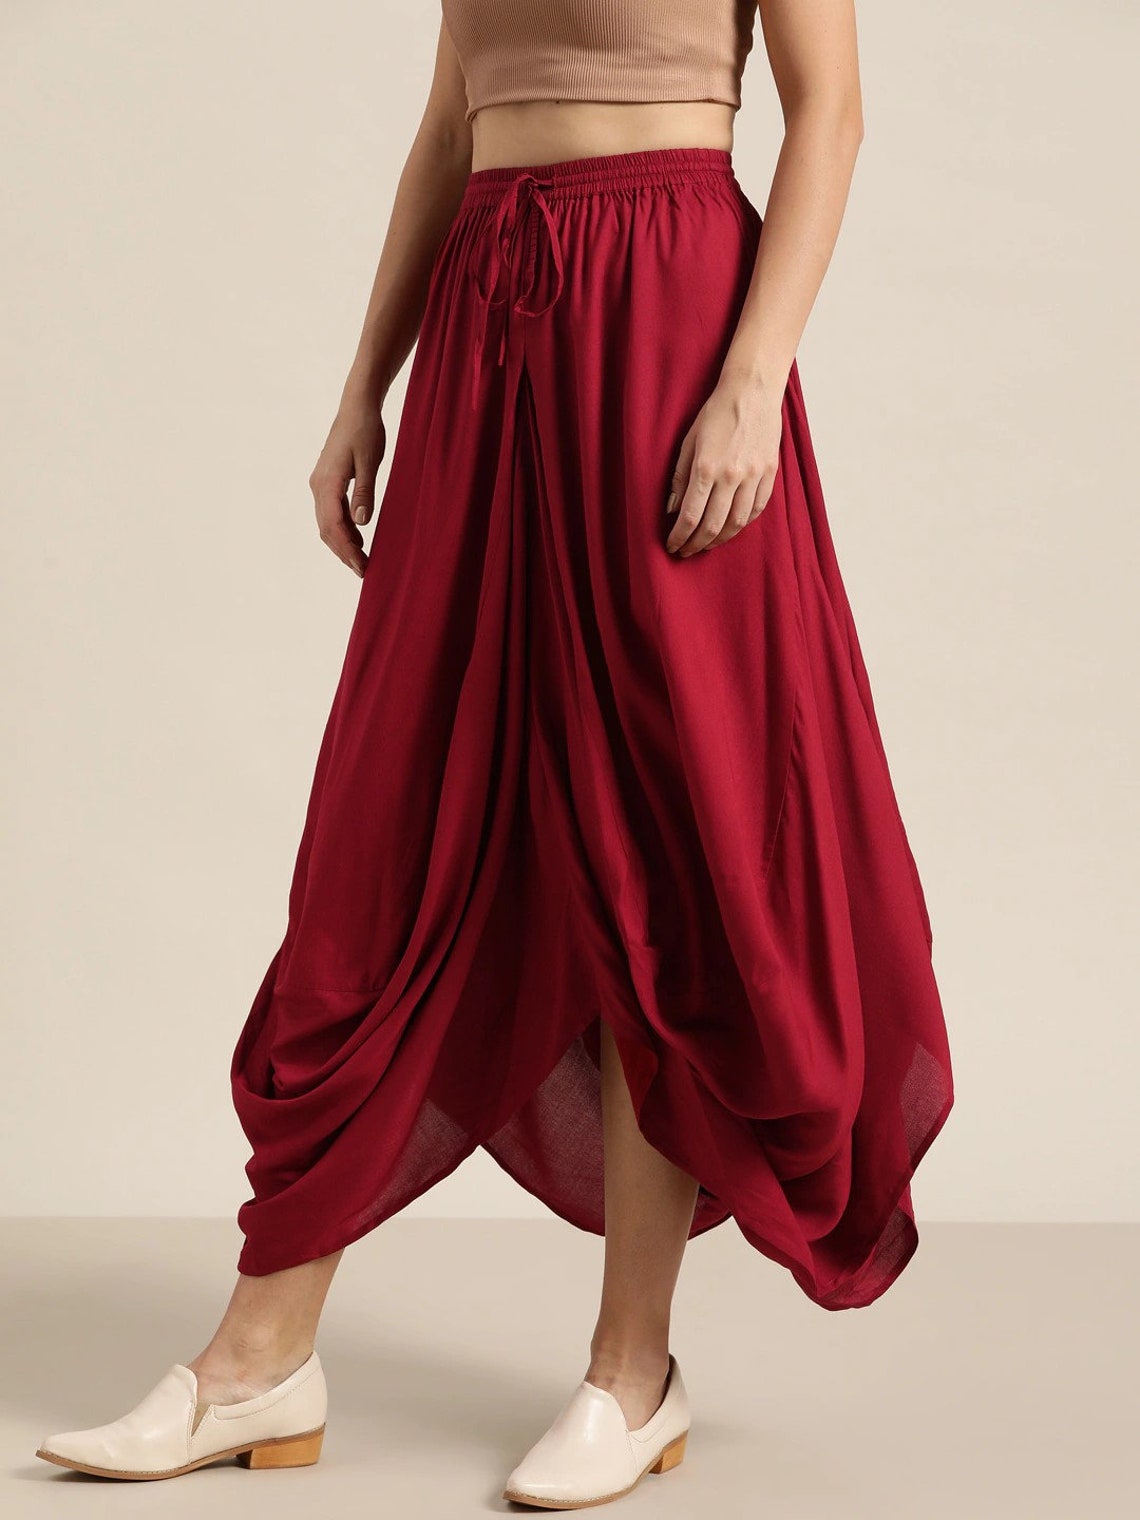 Designer Indian Dhoti Style Skirt for Women Asymmetrical | Etsy